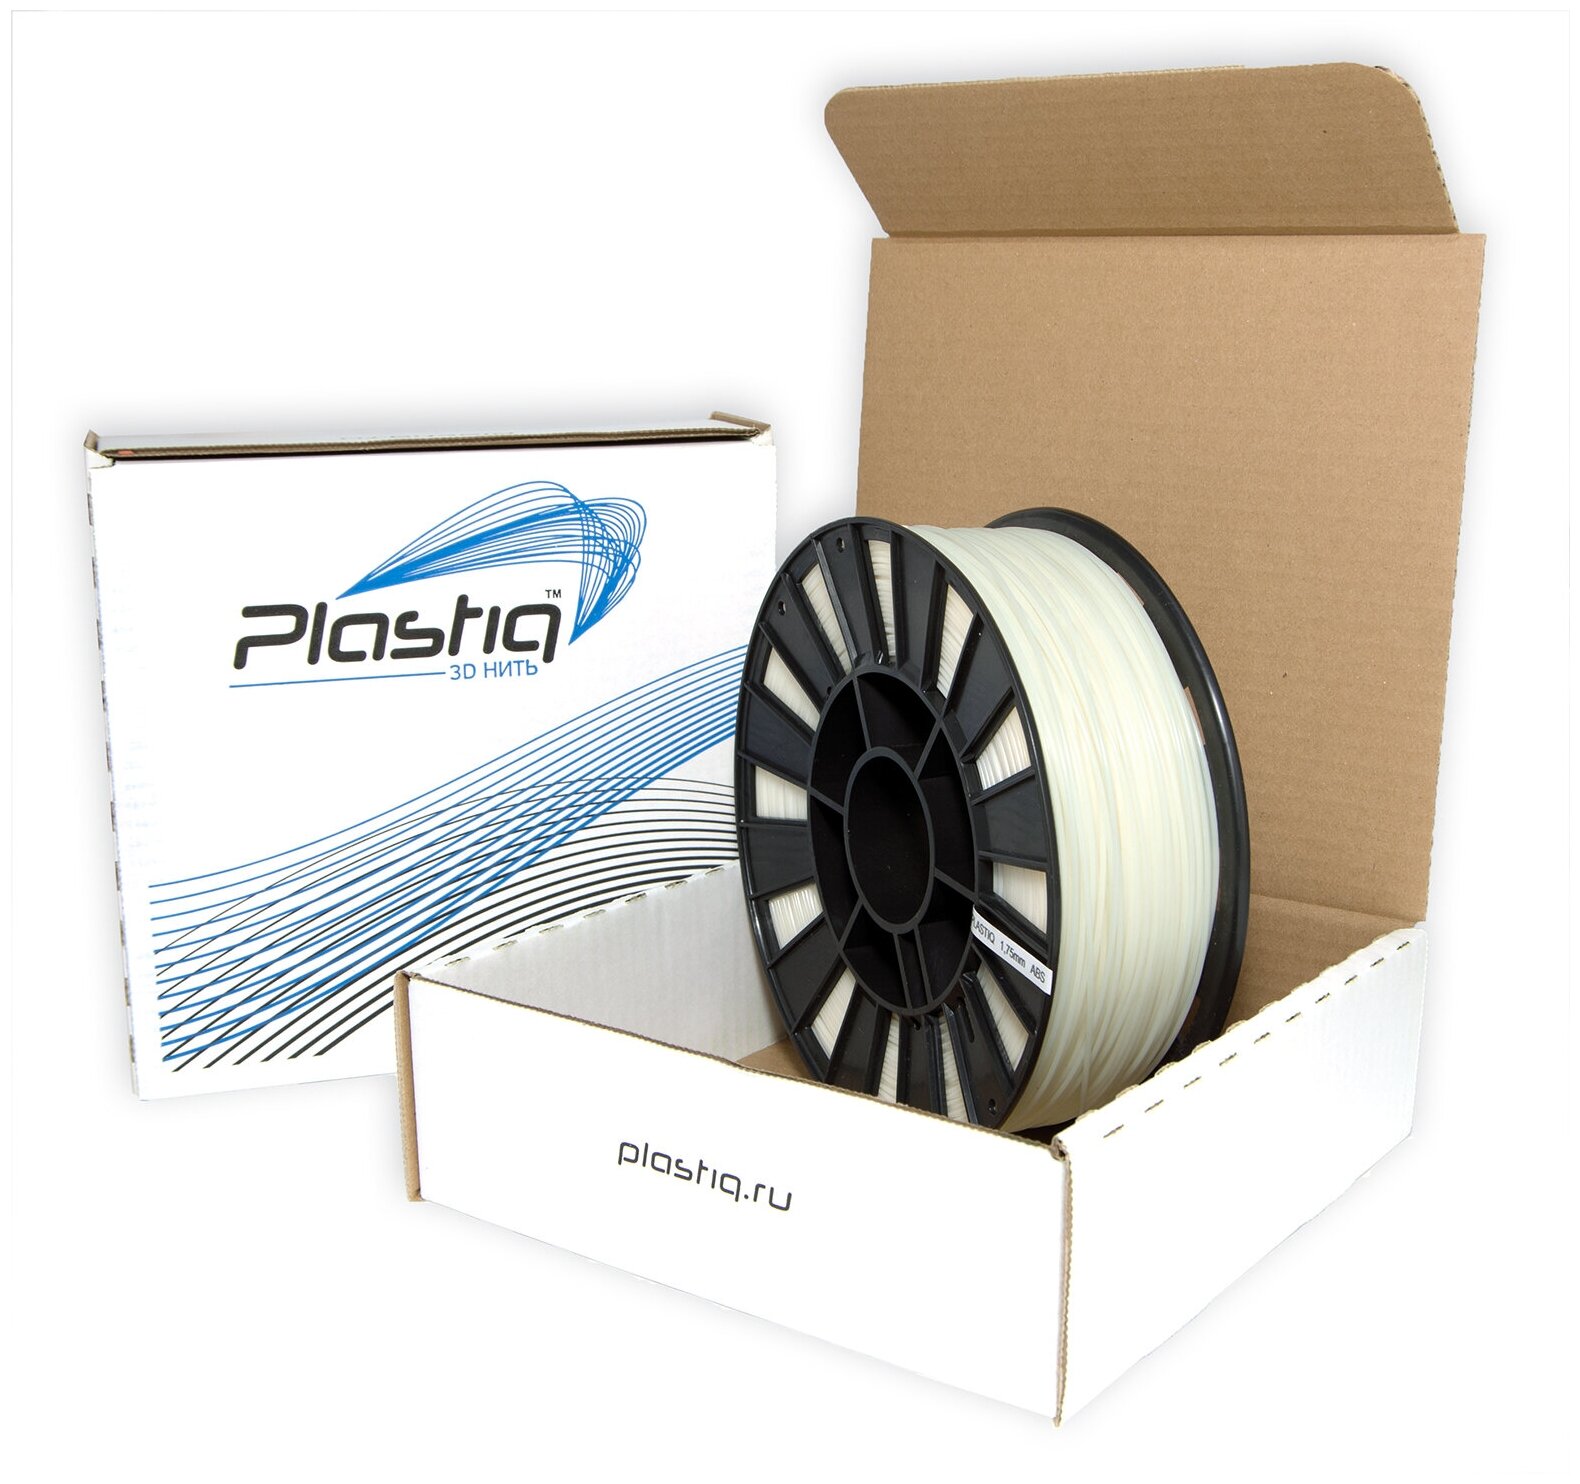 Пластик HIPS для 3D принтера натуральный Plastiq 1,75мм 300 метров